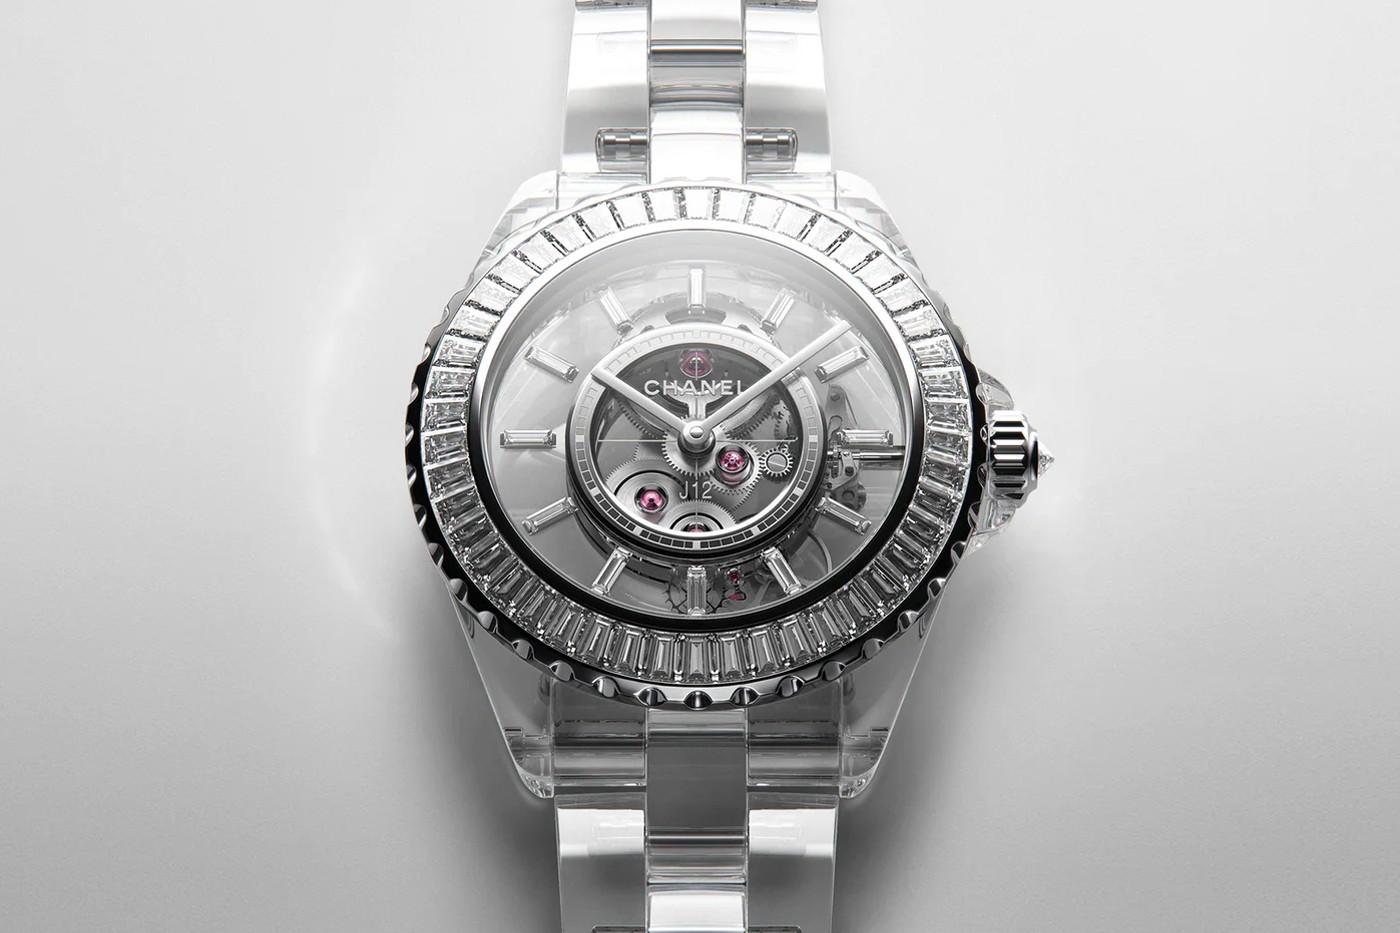 Chanel показал часы J12 с прозрачным браслетом из сапфирового стекла (фото 1)